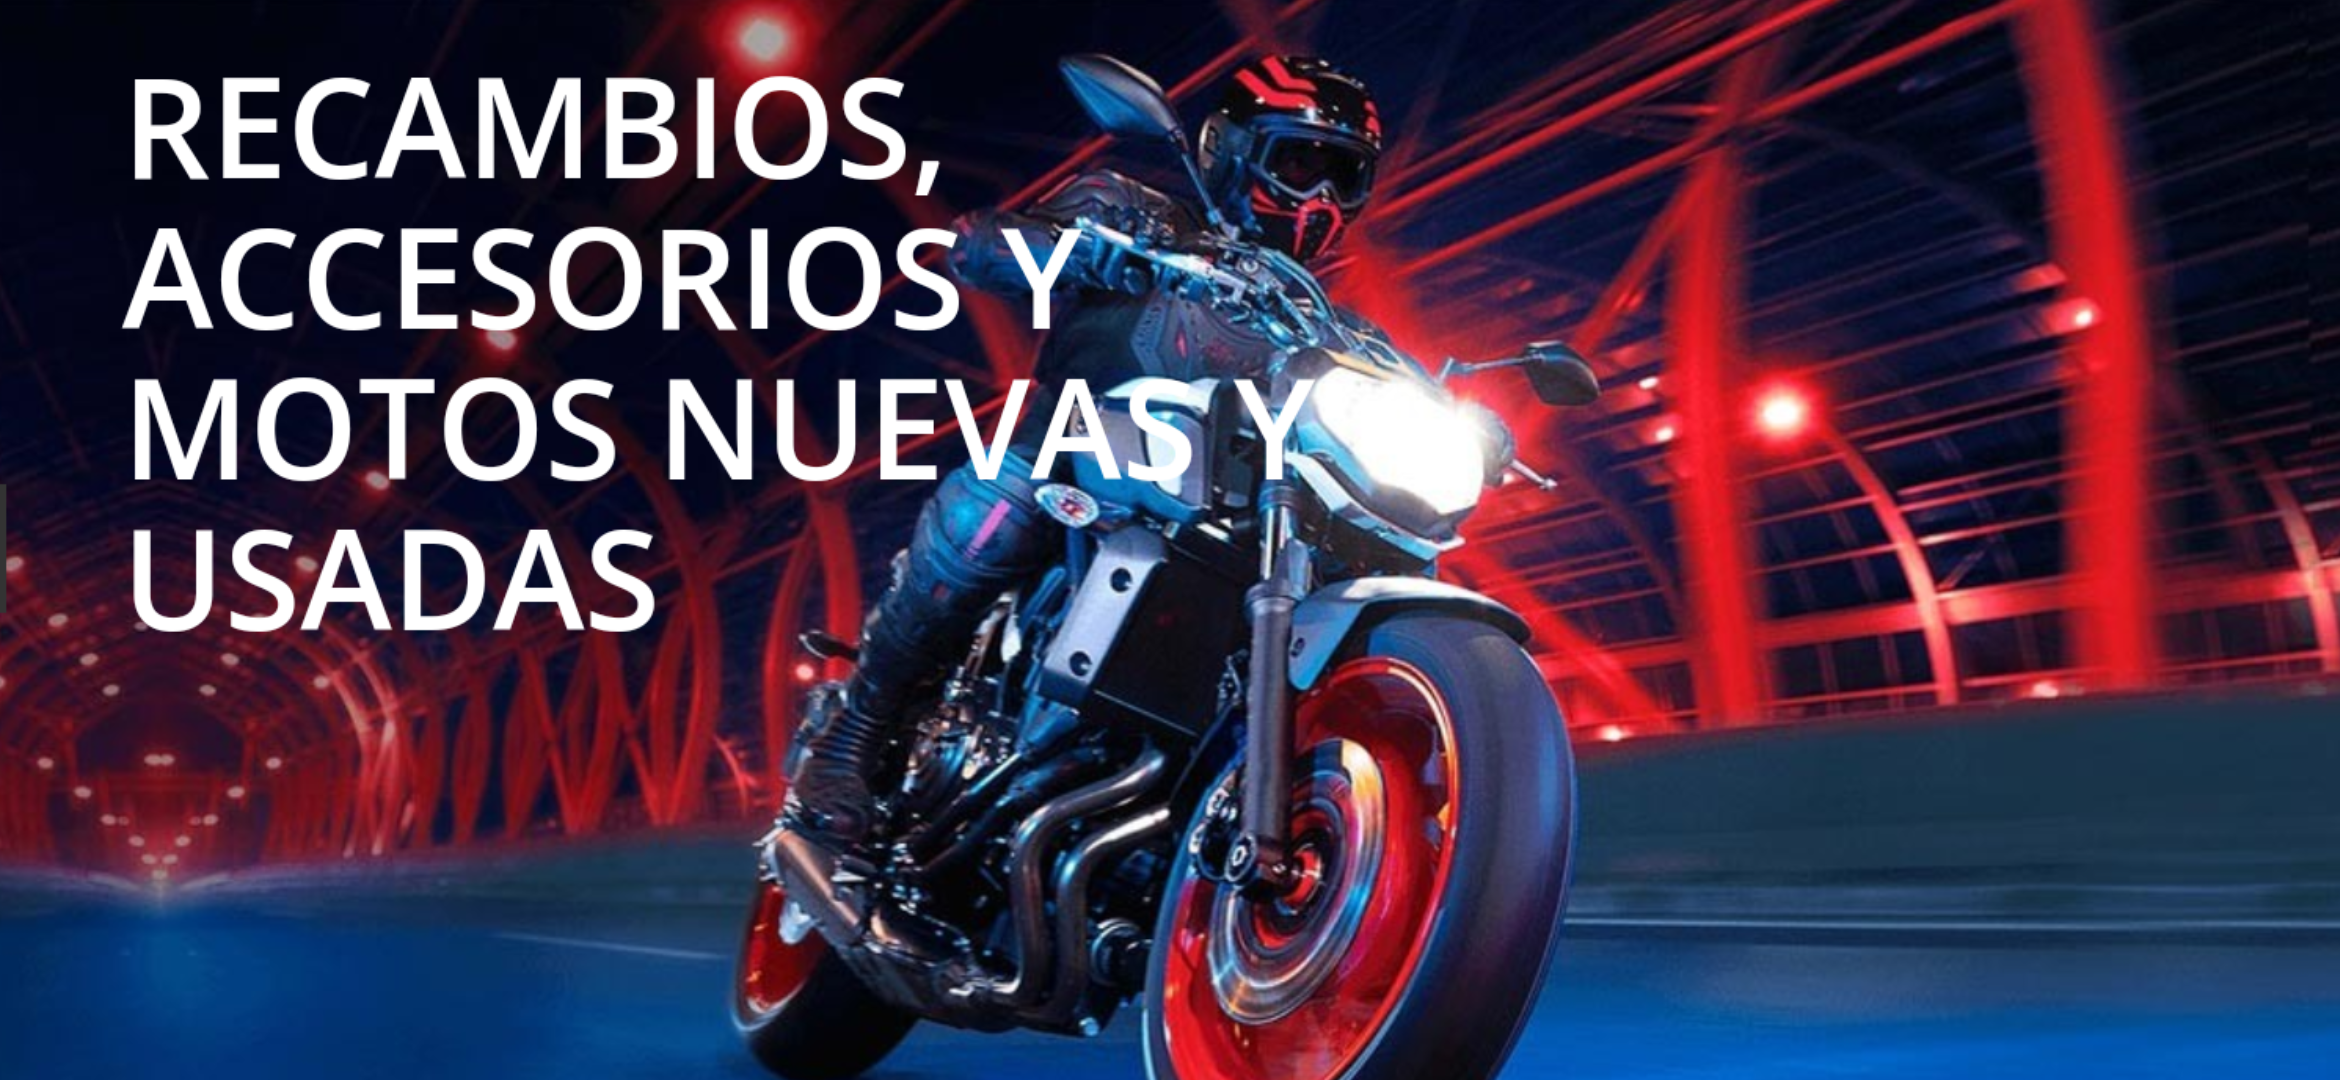 VENTA DE Y RECAMBIO DE MOTO de motos en madrid